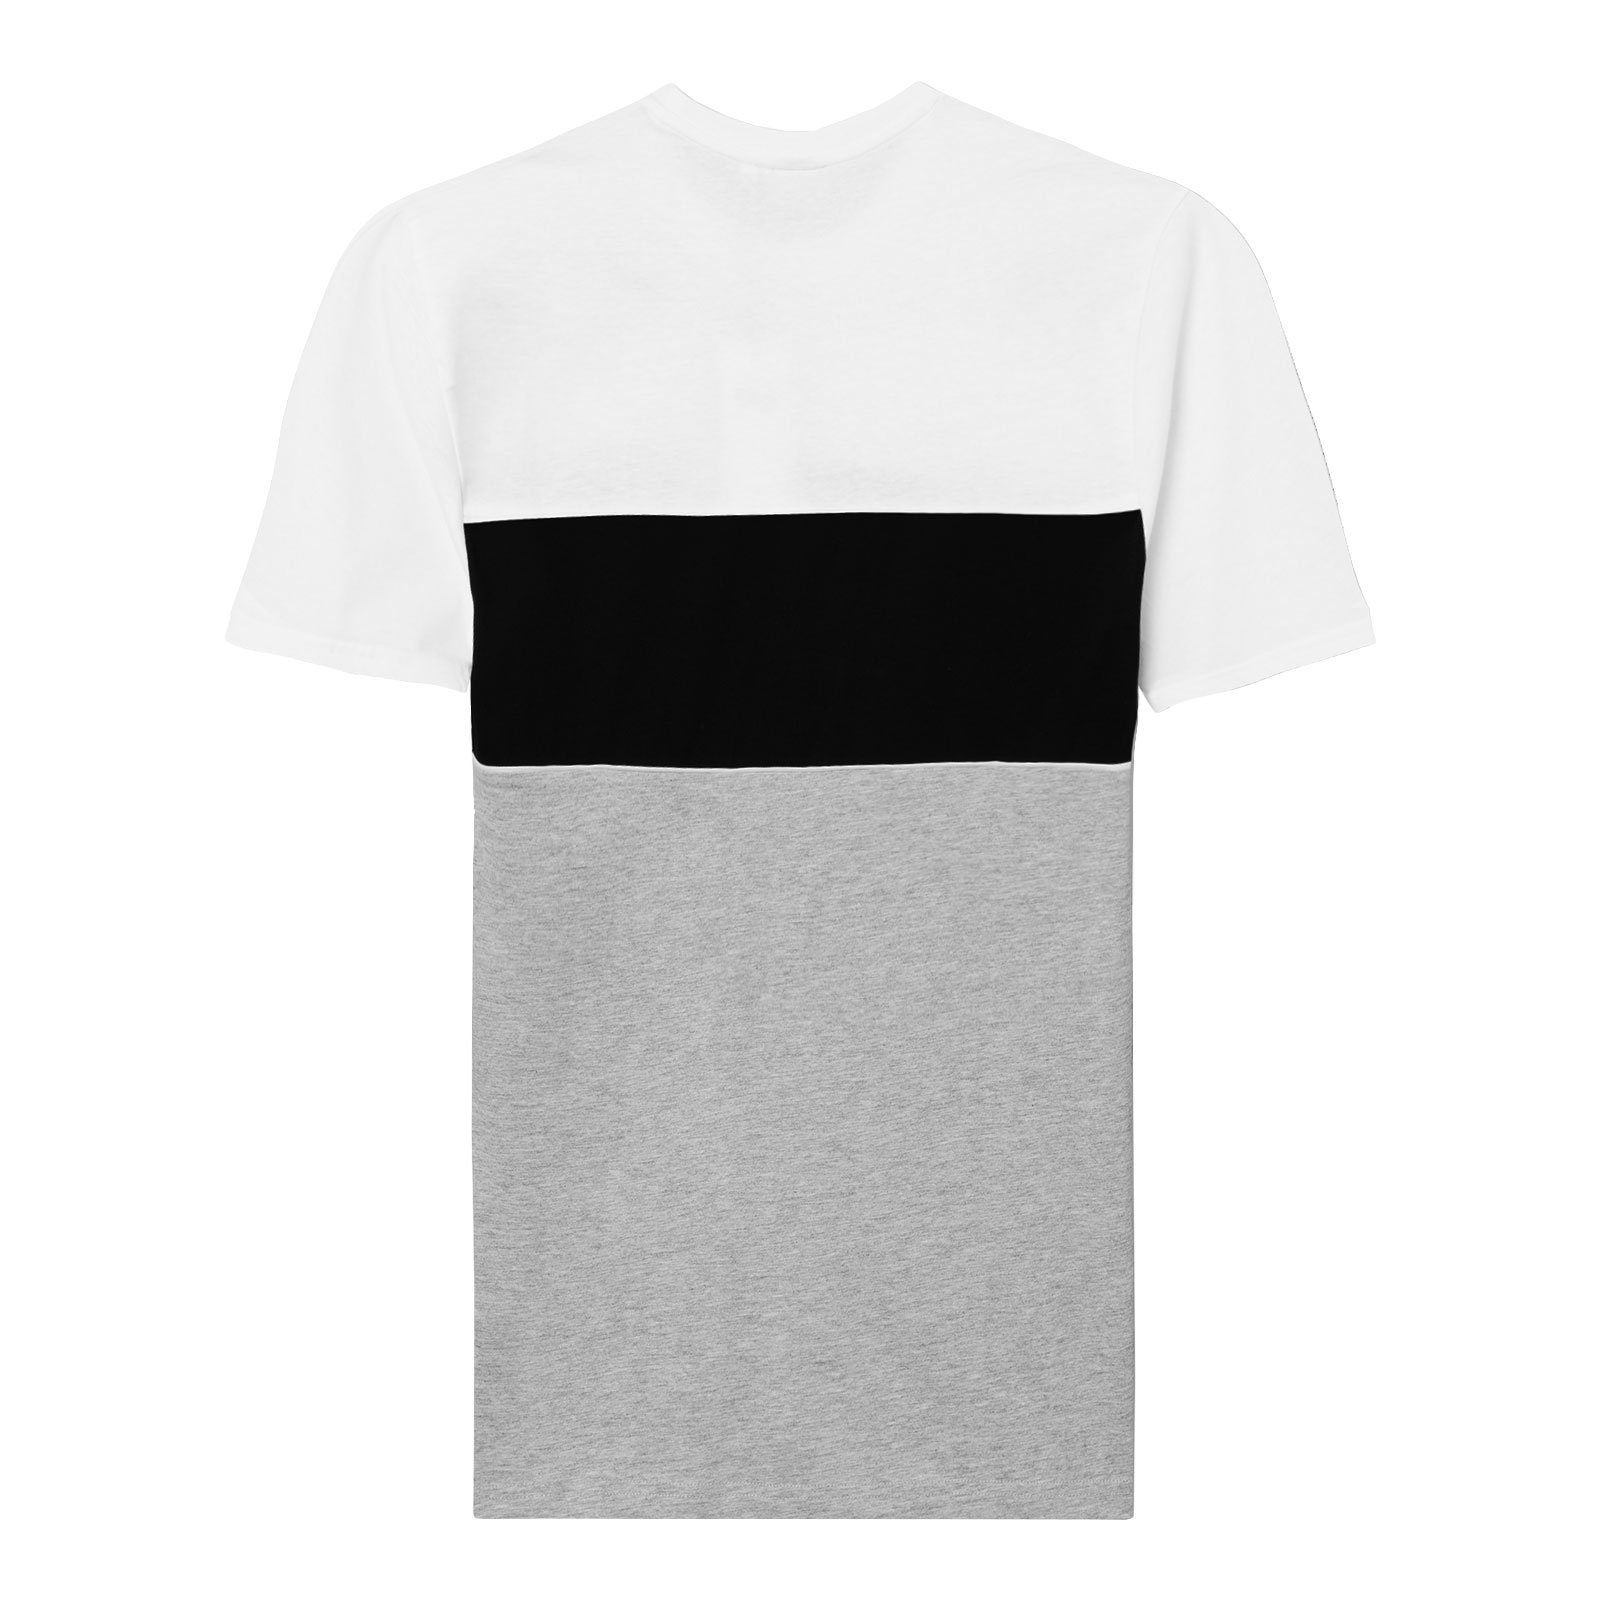 / Blocked melange black T-Shirt Men bright grey Tee light Fila / mit Anoki bros Markenschriftzug white A495